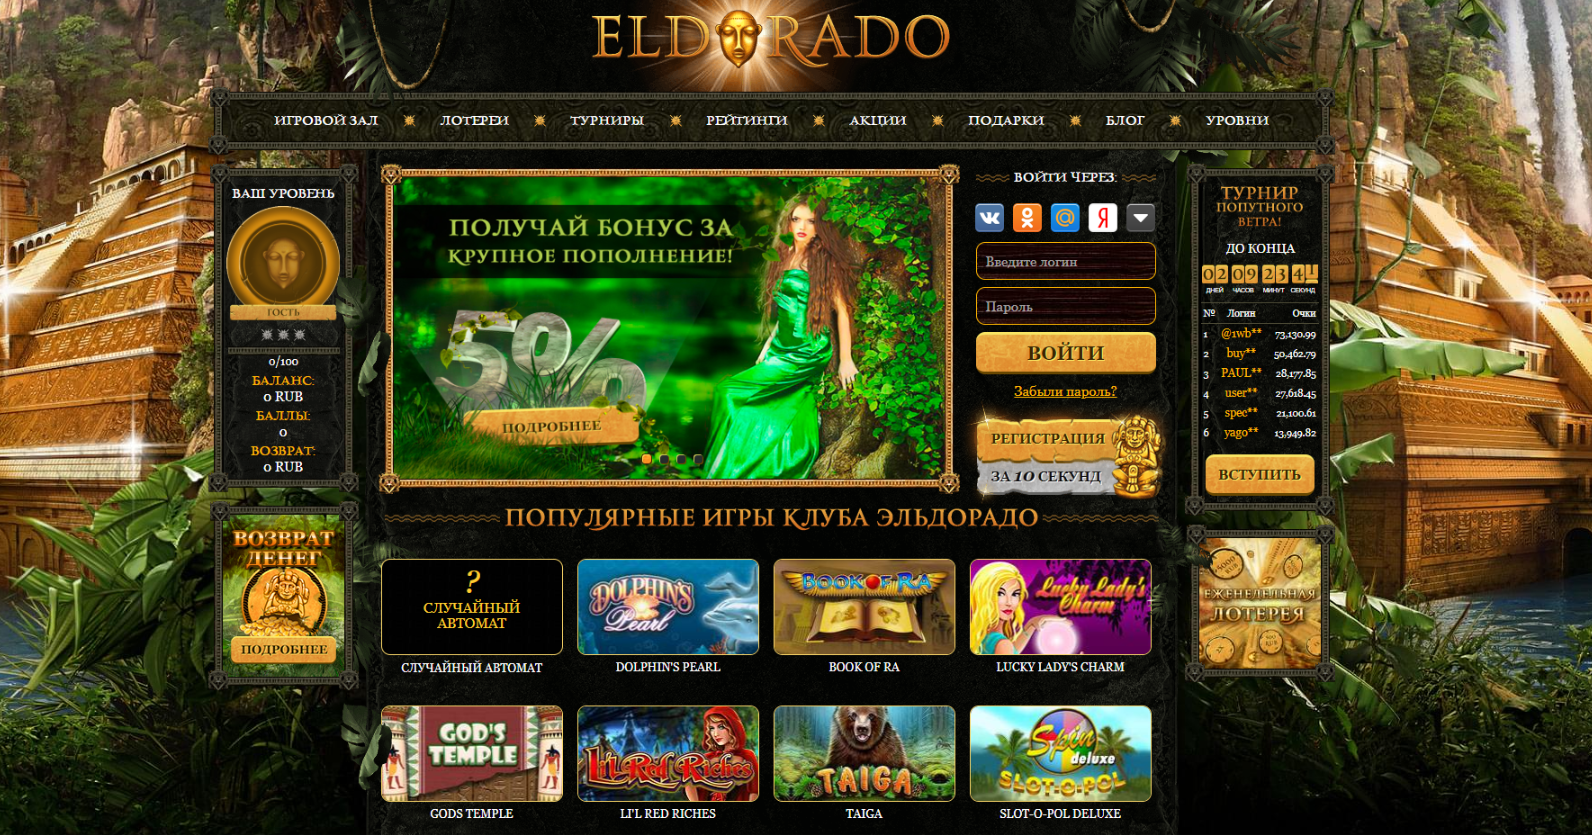 Обзор казино eldorado24.com